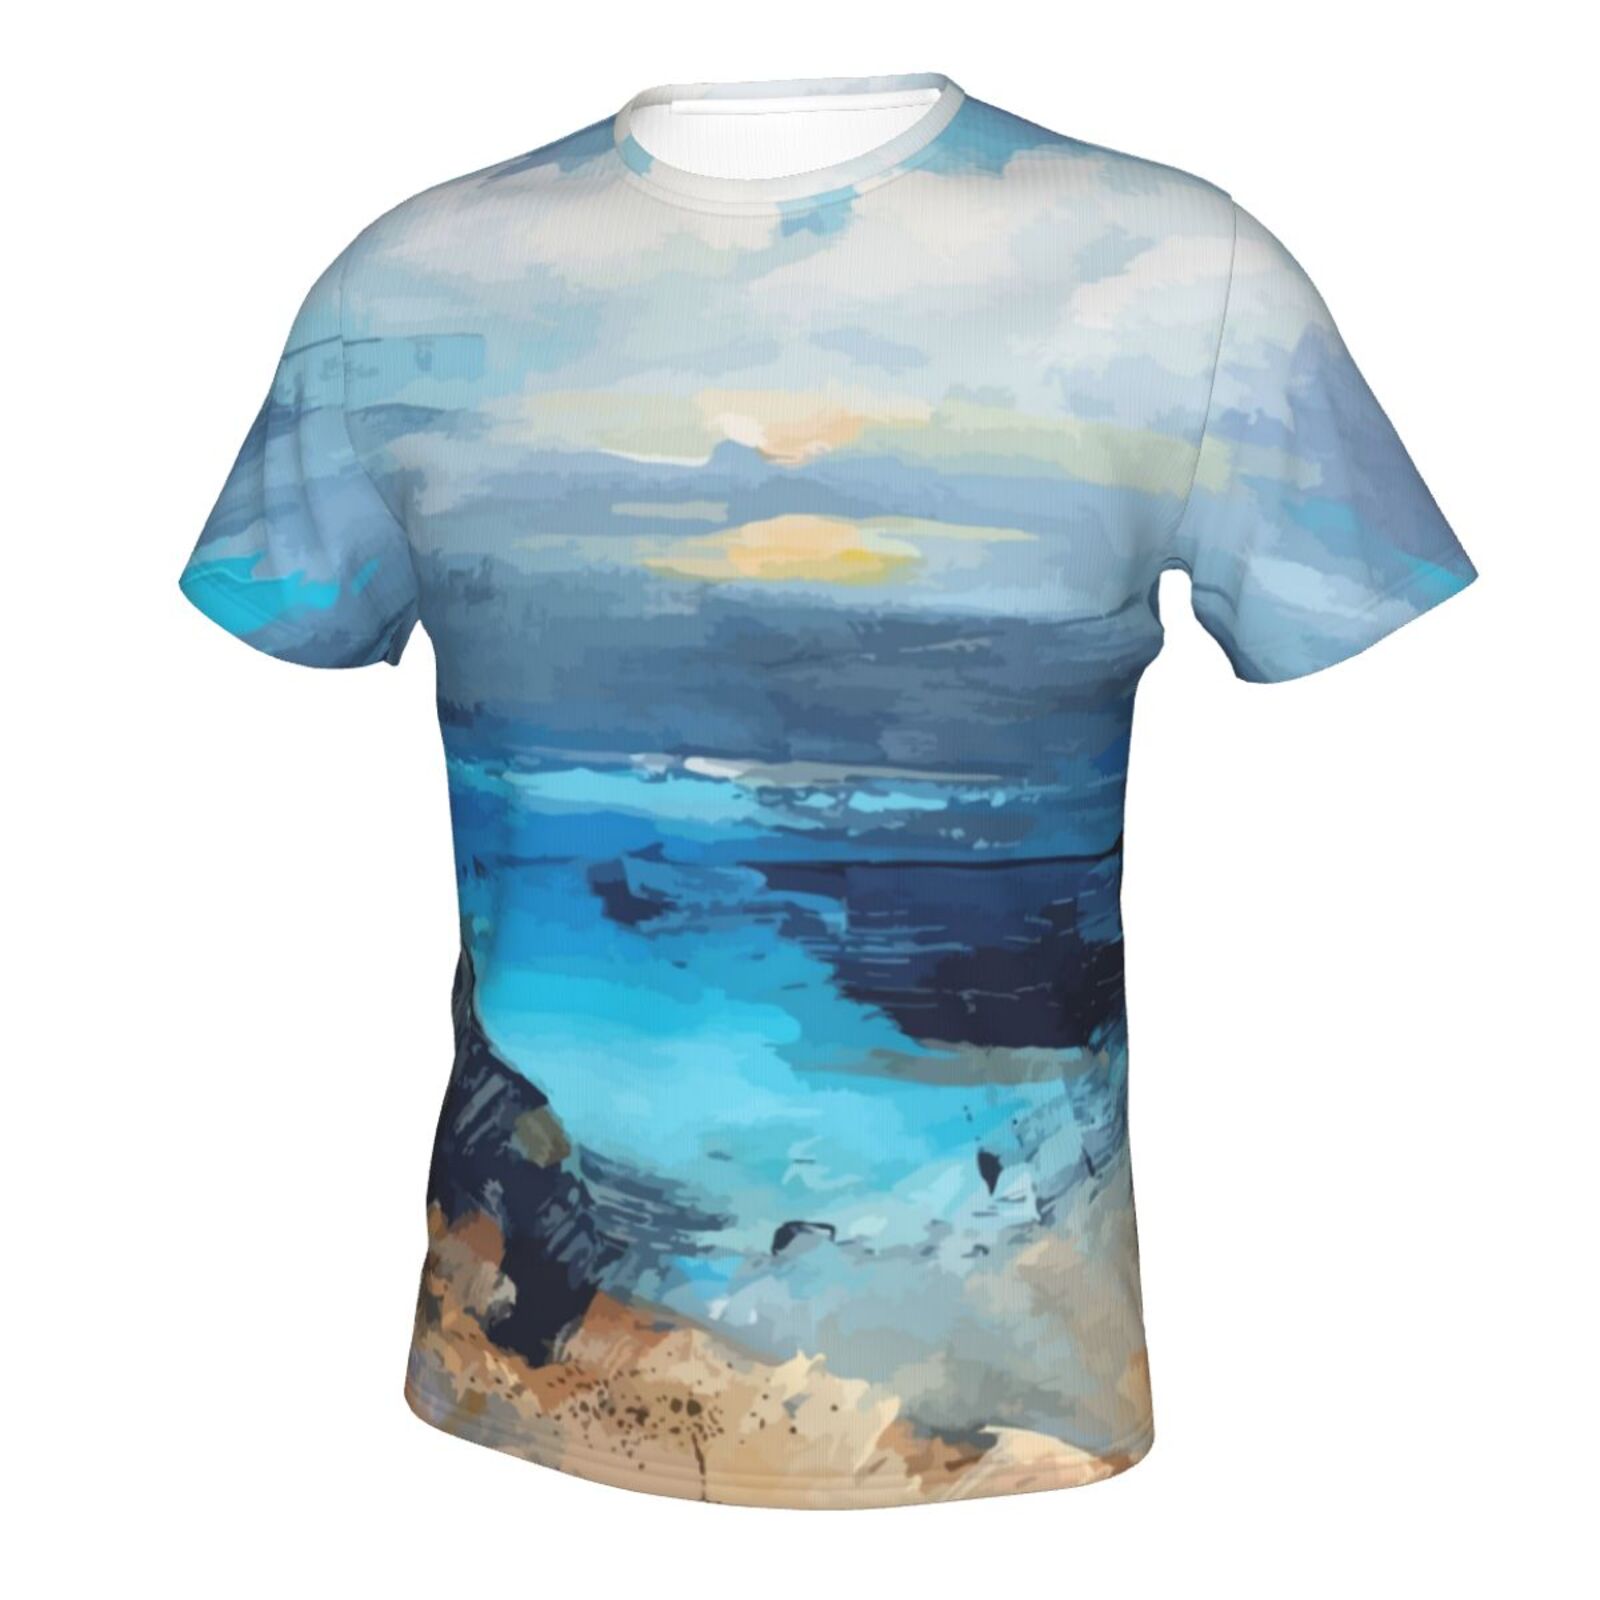 Klassisches T Shirt mit kleinen Bucht Malelementen